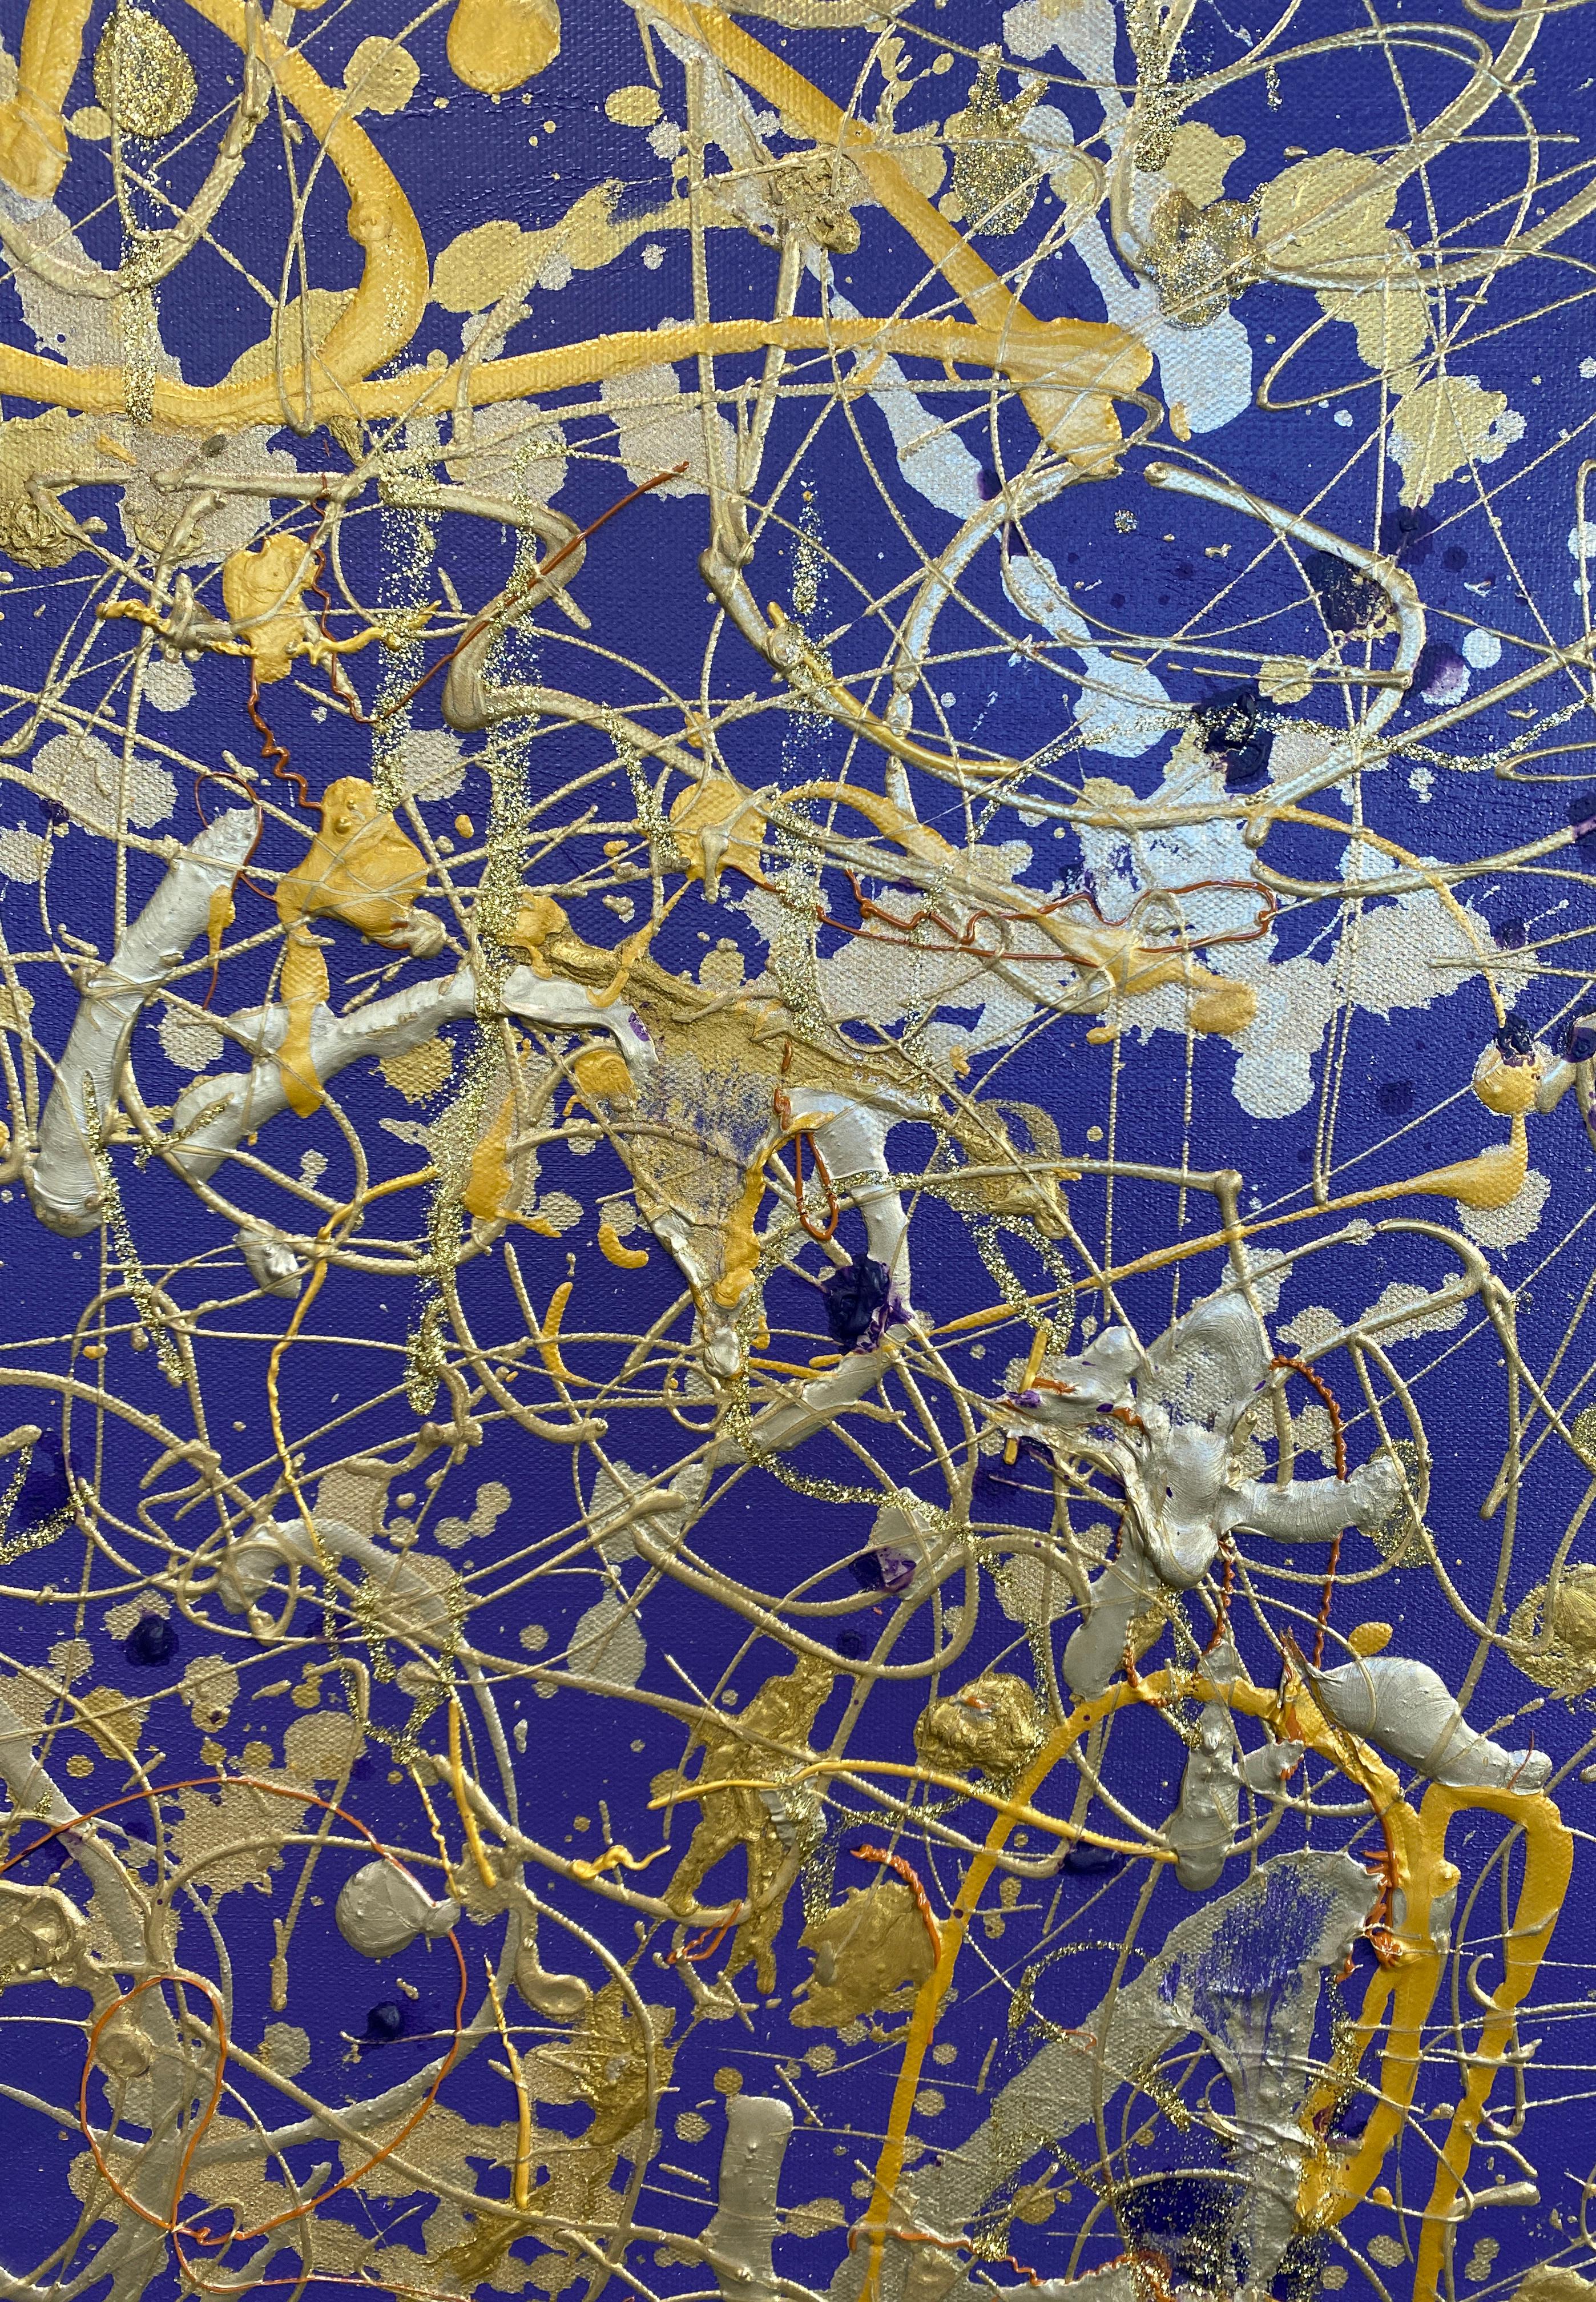 Lila Juwel Jackson Pollock inspiriert abstrakte Malerei auf Leinwand 36x48